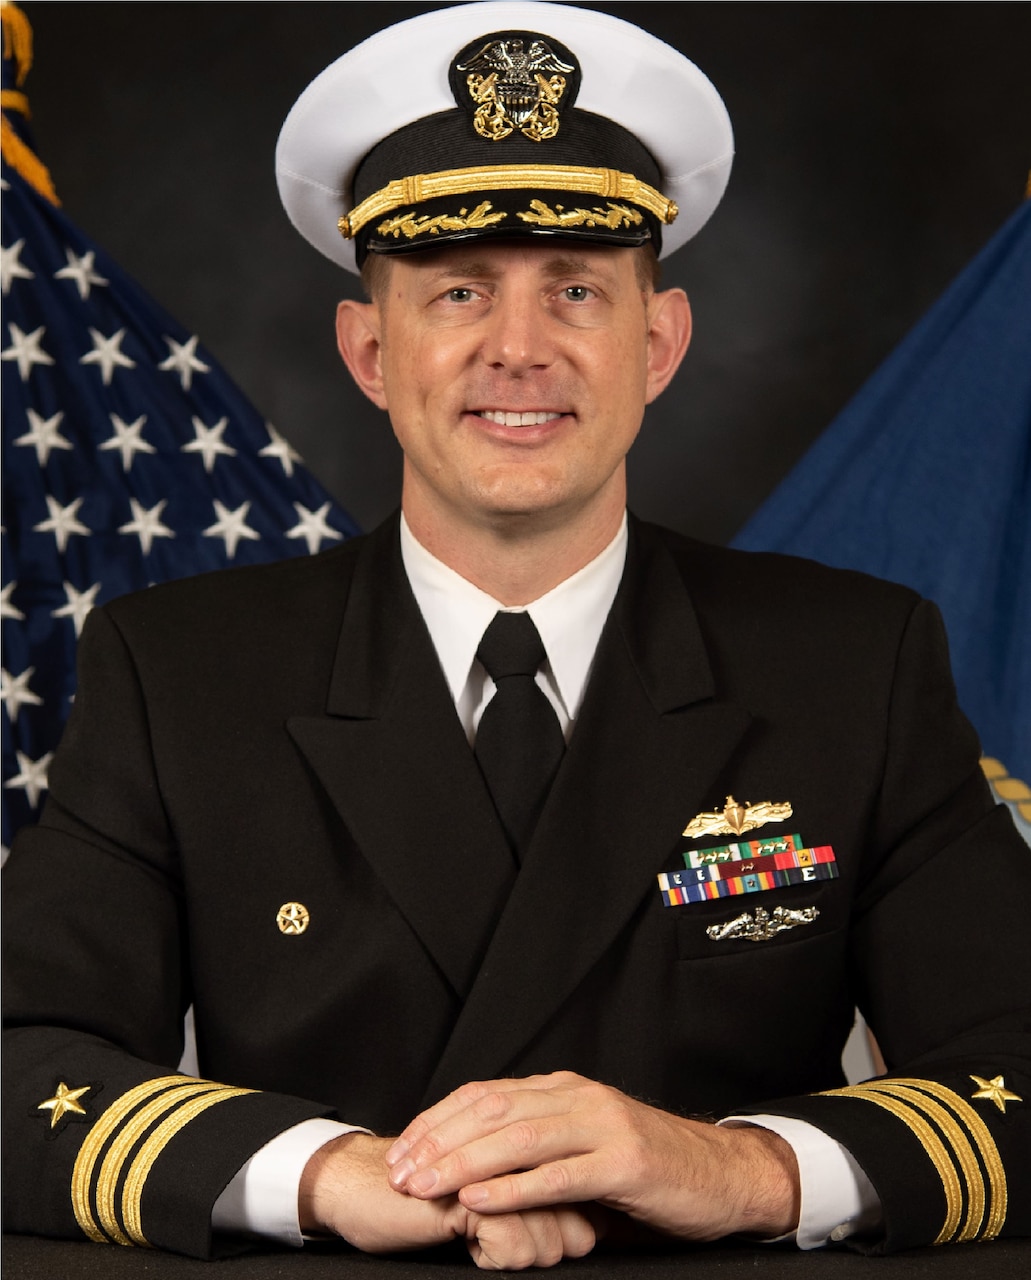 Commander Michael A. Winslow